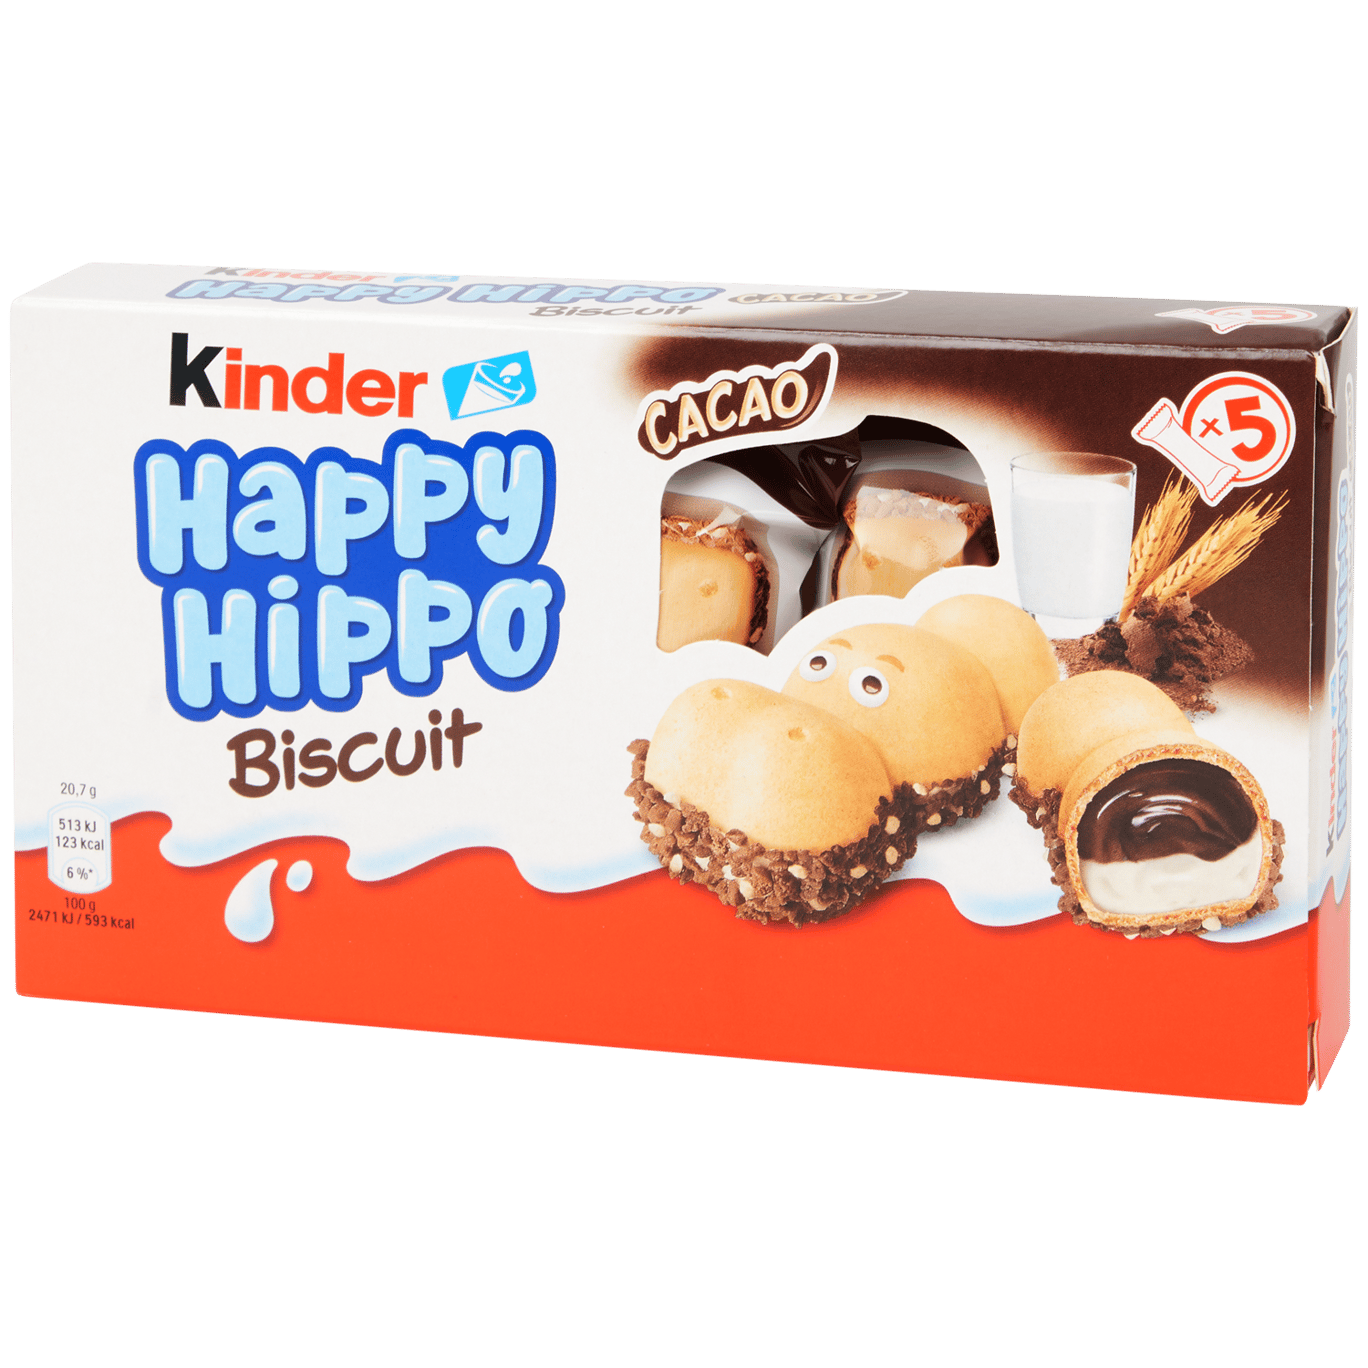 Biscuit Kinder Happy Hippo